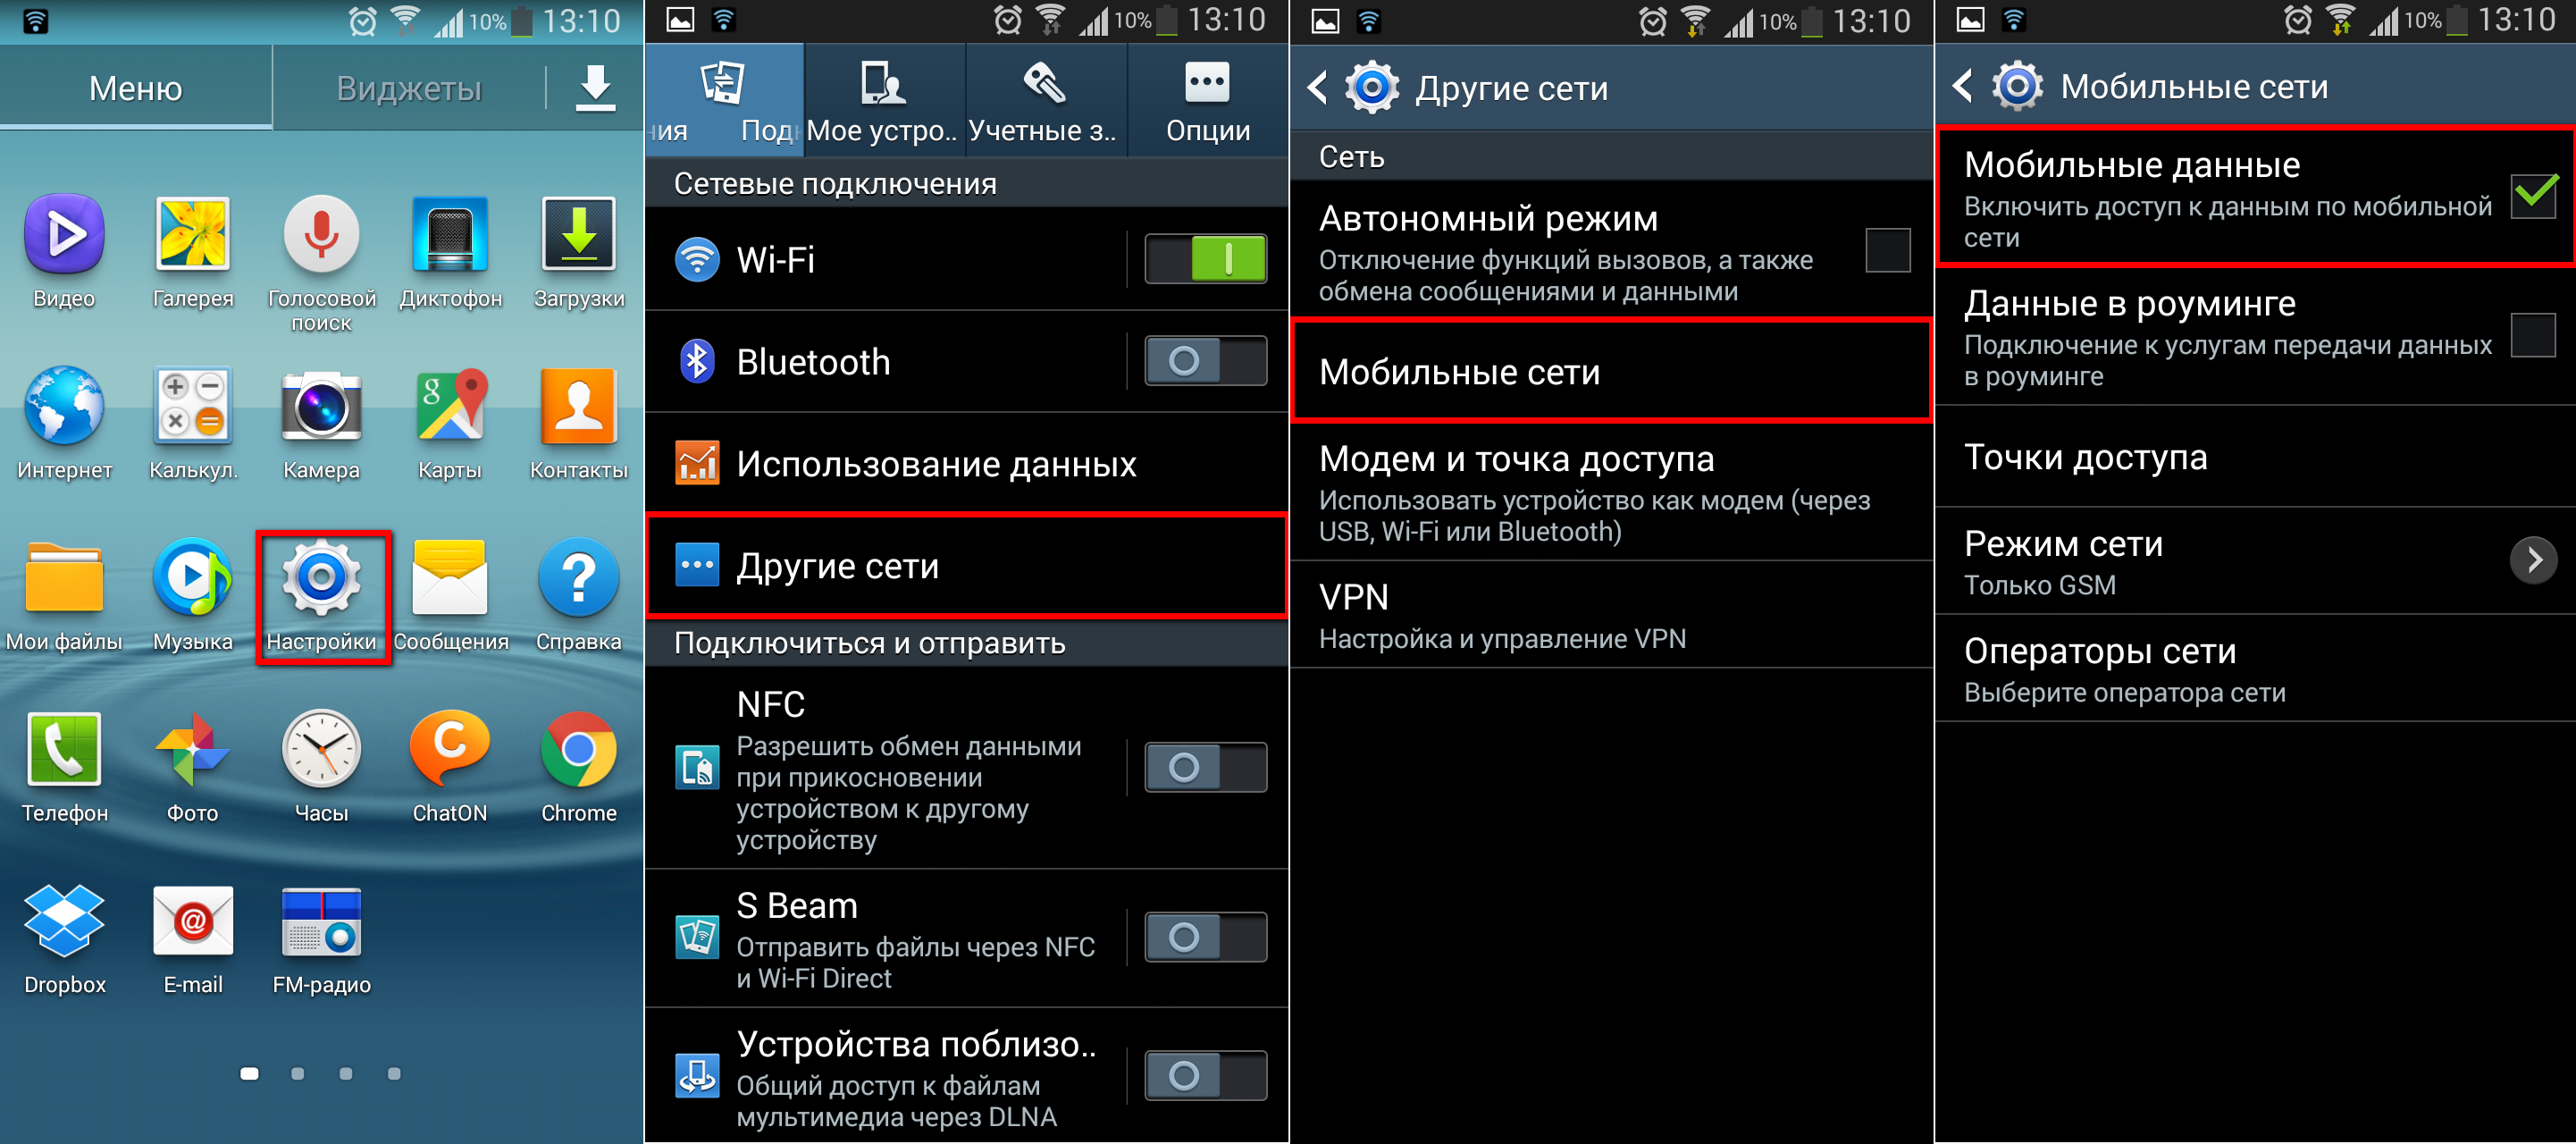 ✅ демо-версия iphone или ipad – что это такое и как убрать этот режим? что такое demo mode на планшете. - softaltair.ru